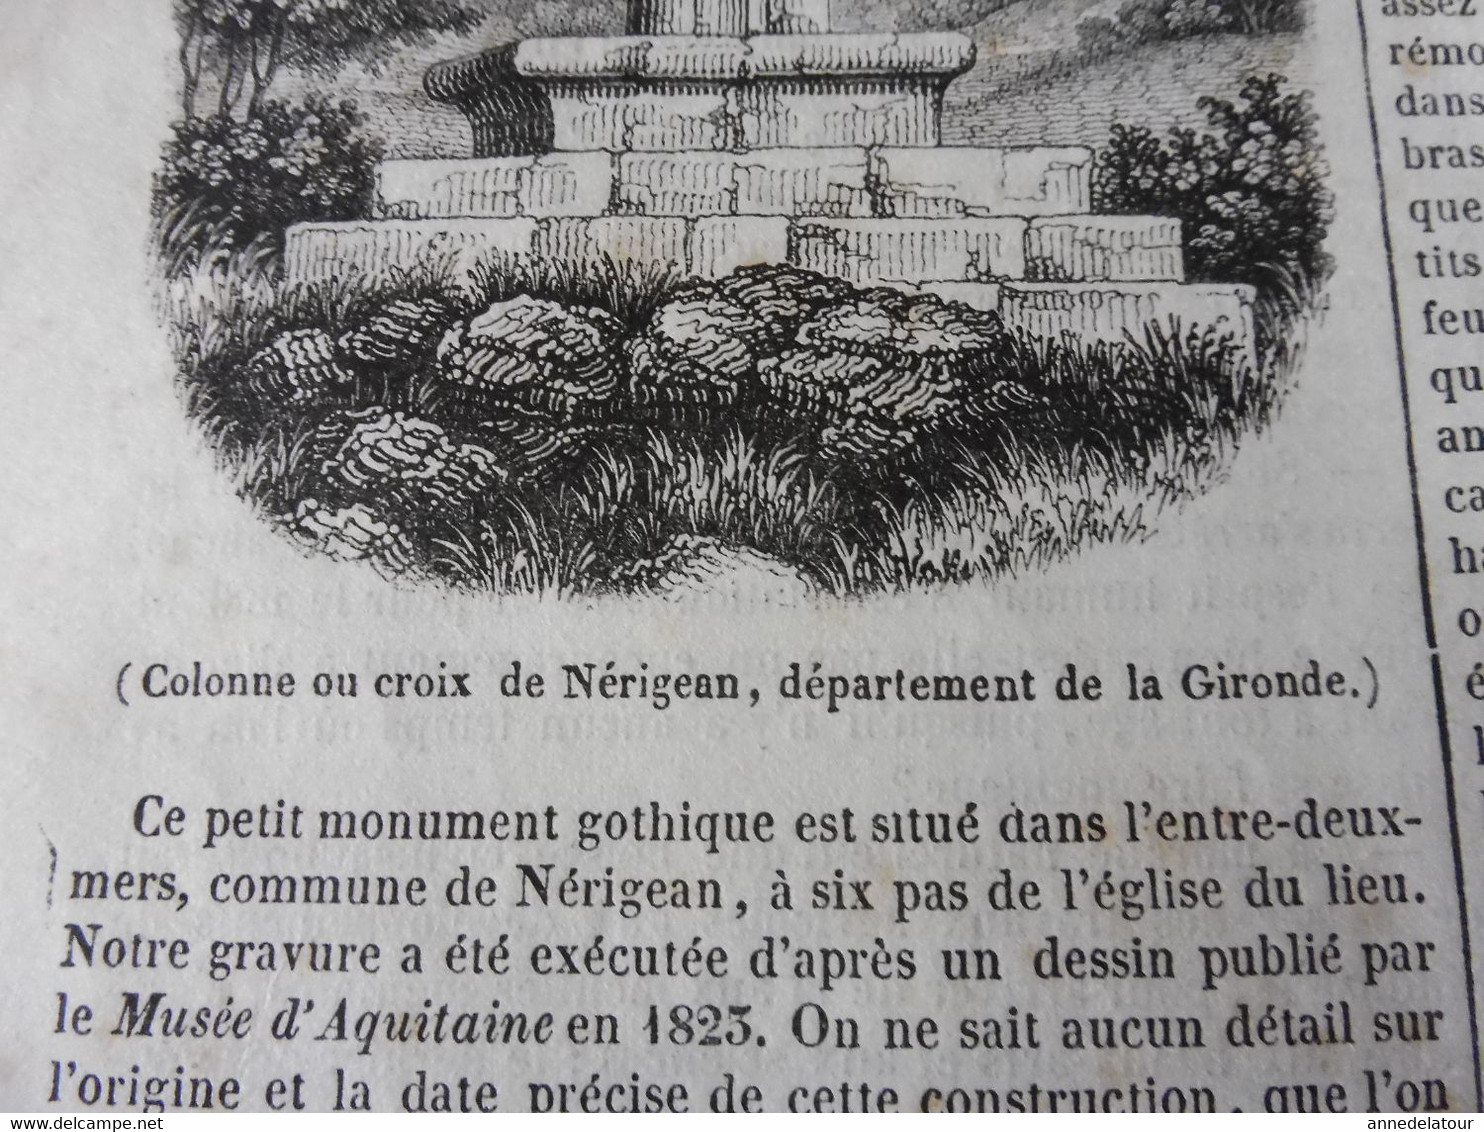 1839 Le coucou; Joseph Barra; Ecole chrétienne à Calcutta; Nérigean et sa crois ou colonne ;Espagne au 18e siècle  ; etc